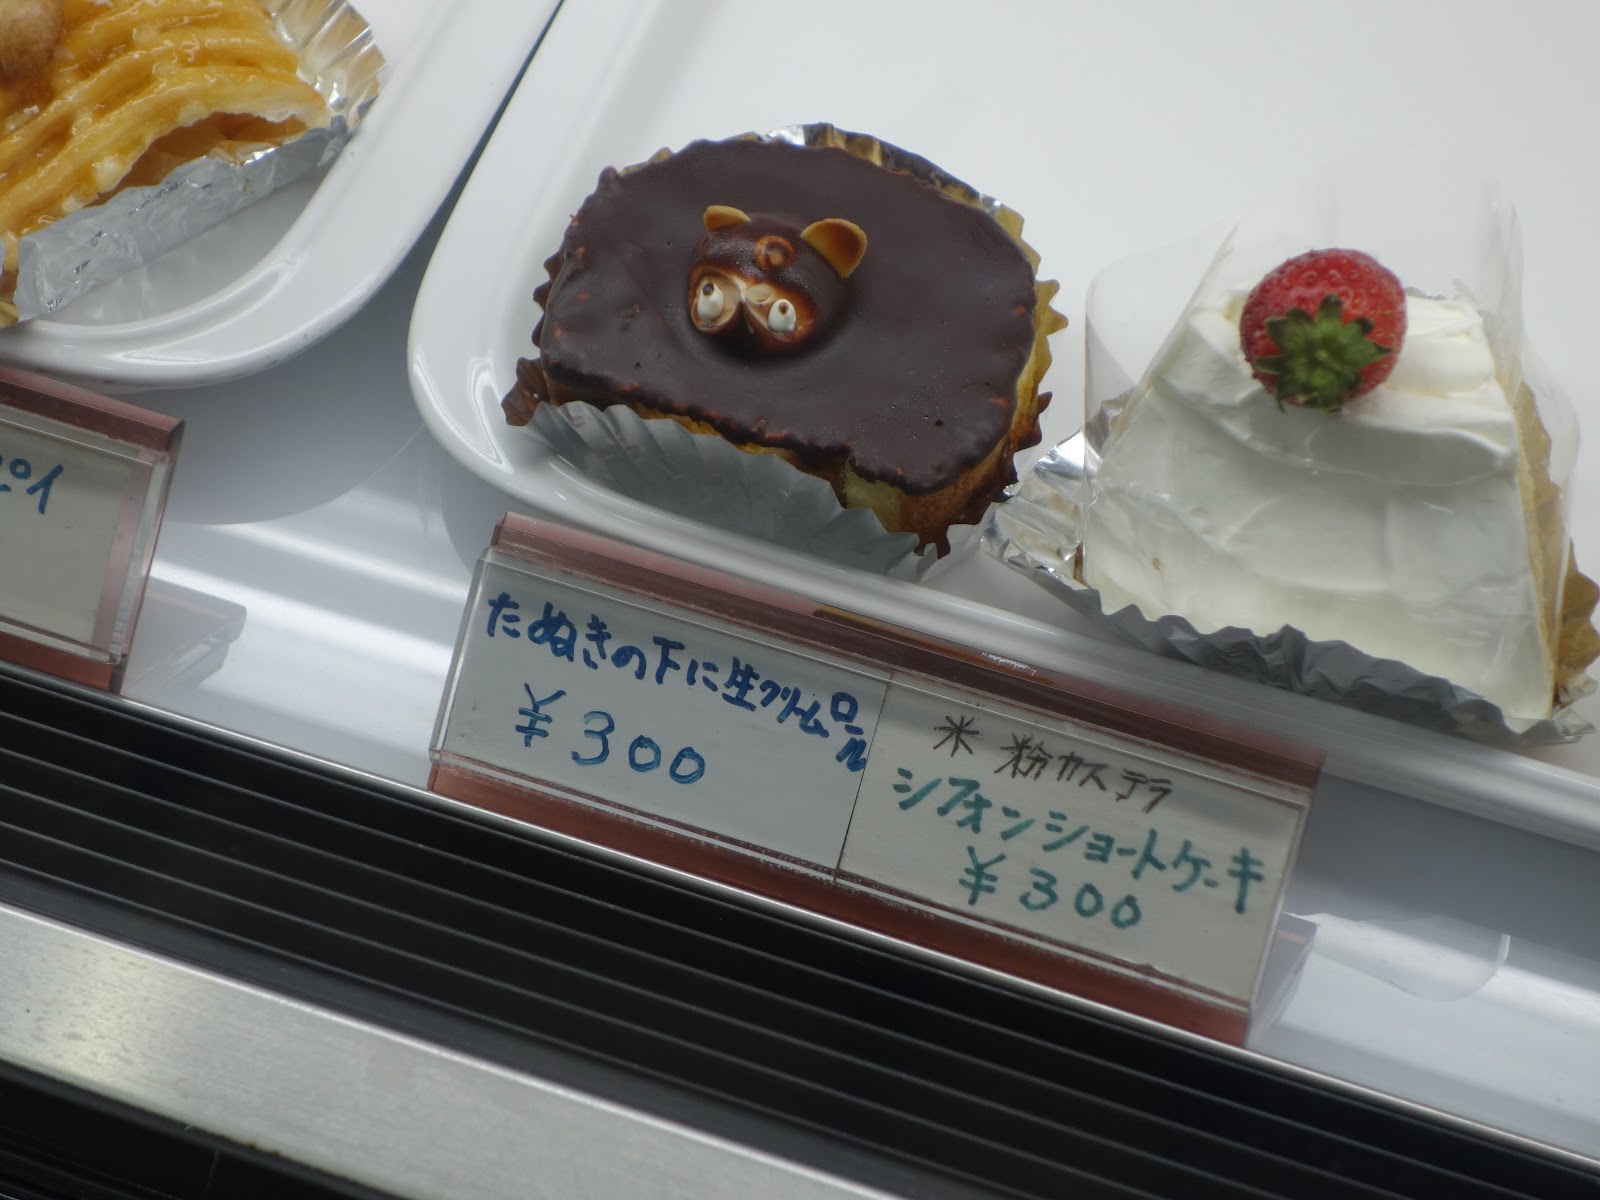 たぬきケーキのあるとこめぐり 全国たぬきケーキ生息マップ たぬき モンシェリー 神奈川県大和市